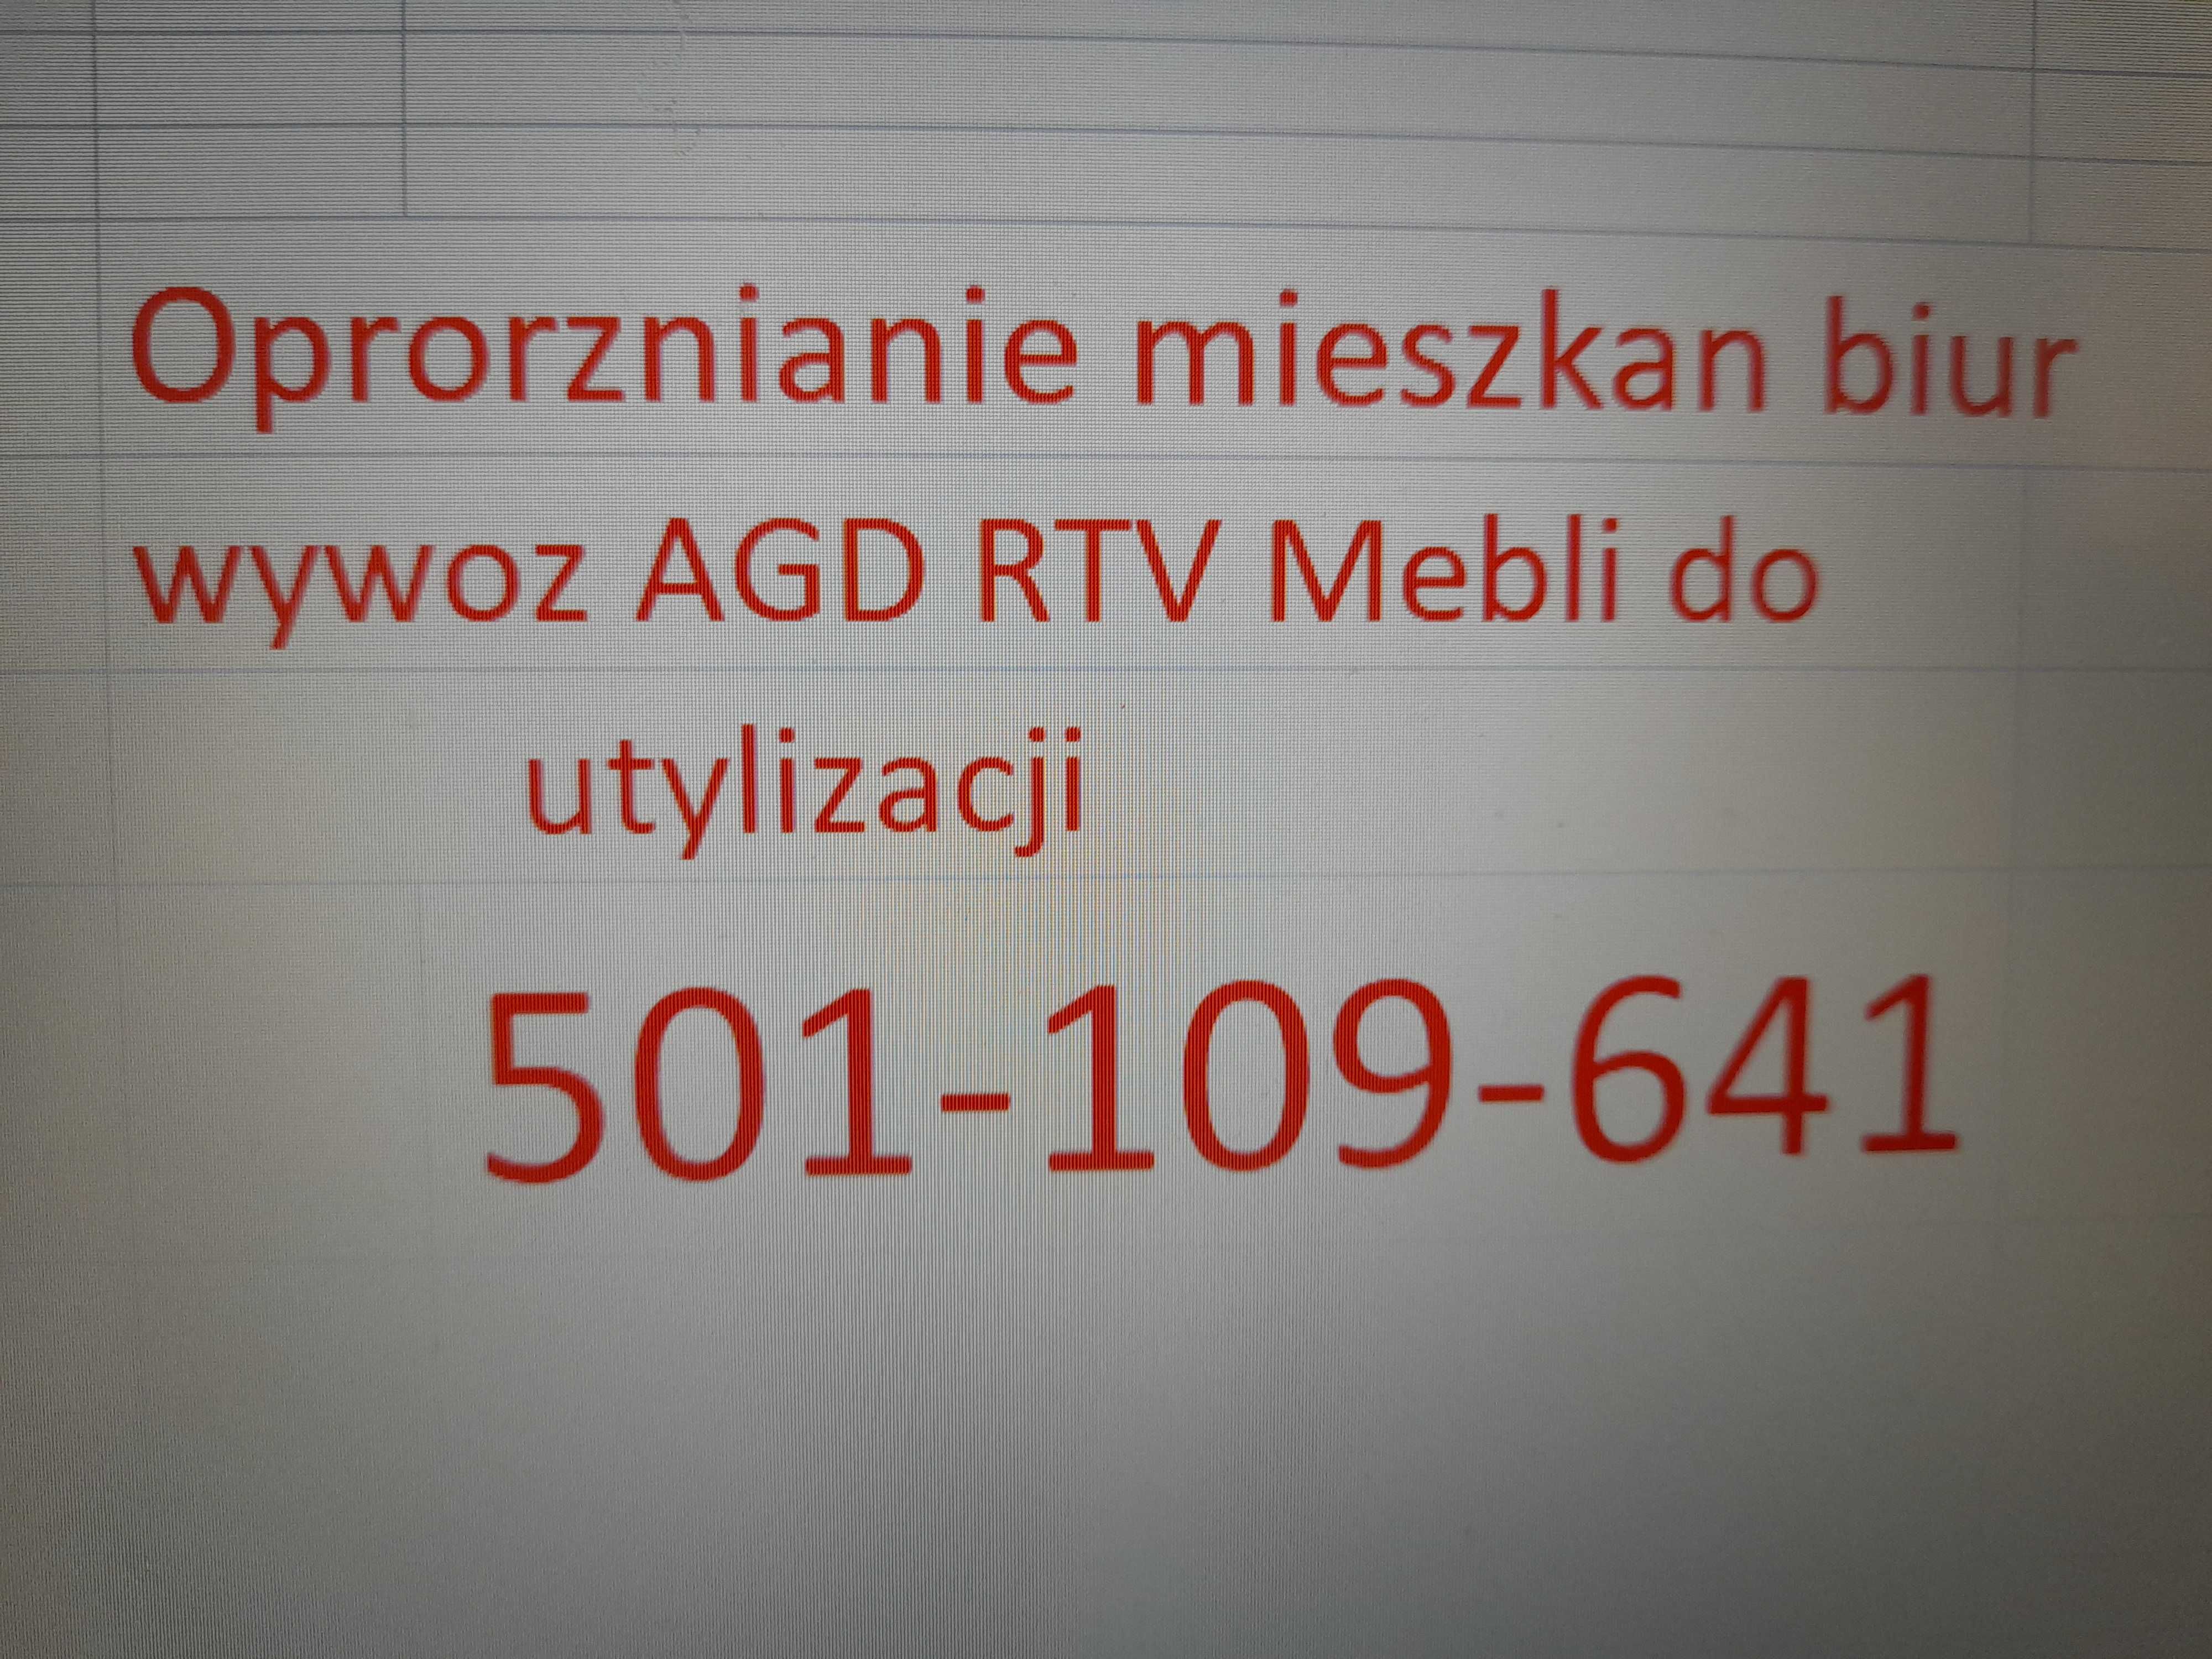 Oproznianie mieszkan biur Wywoz AGD RTV Mebli do utylizacji CHORZOW